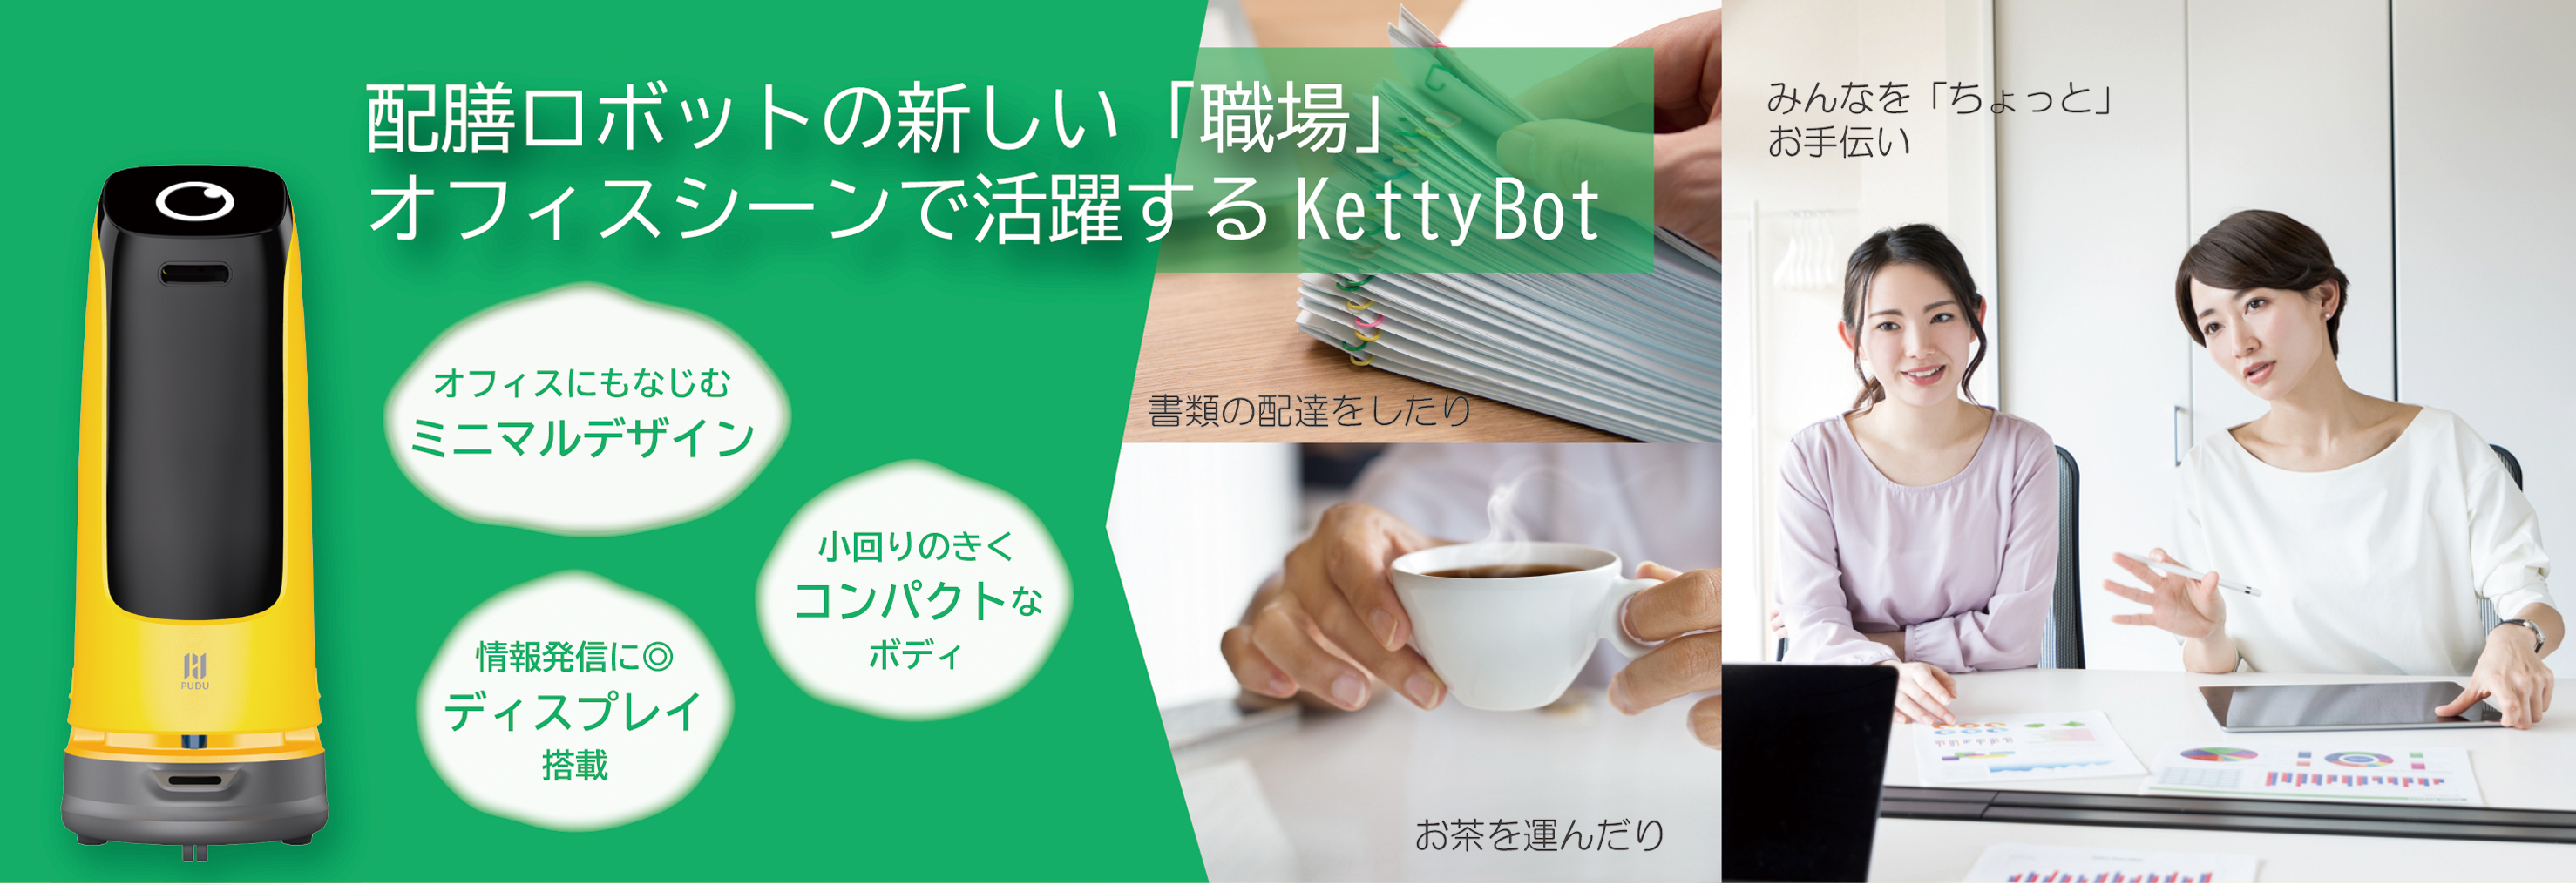 オフィスで働くKettyBot導入事例